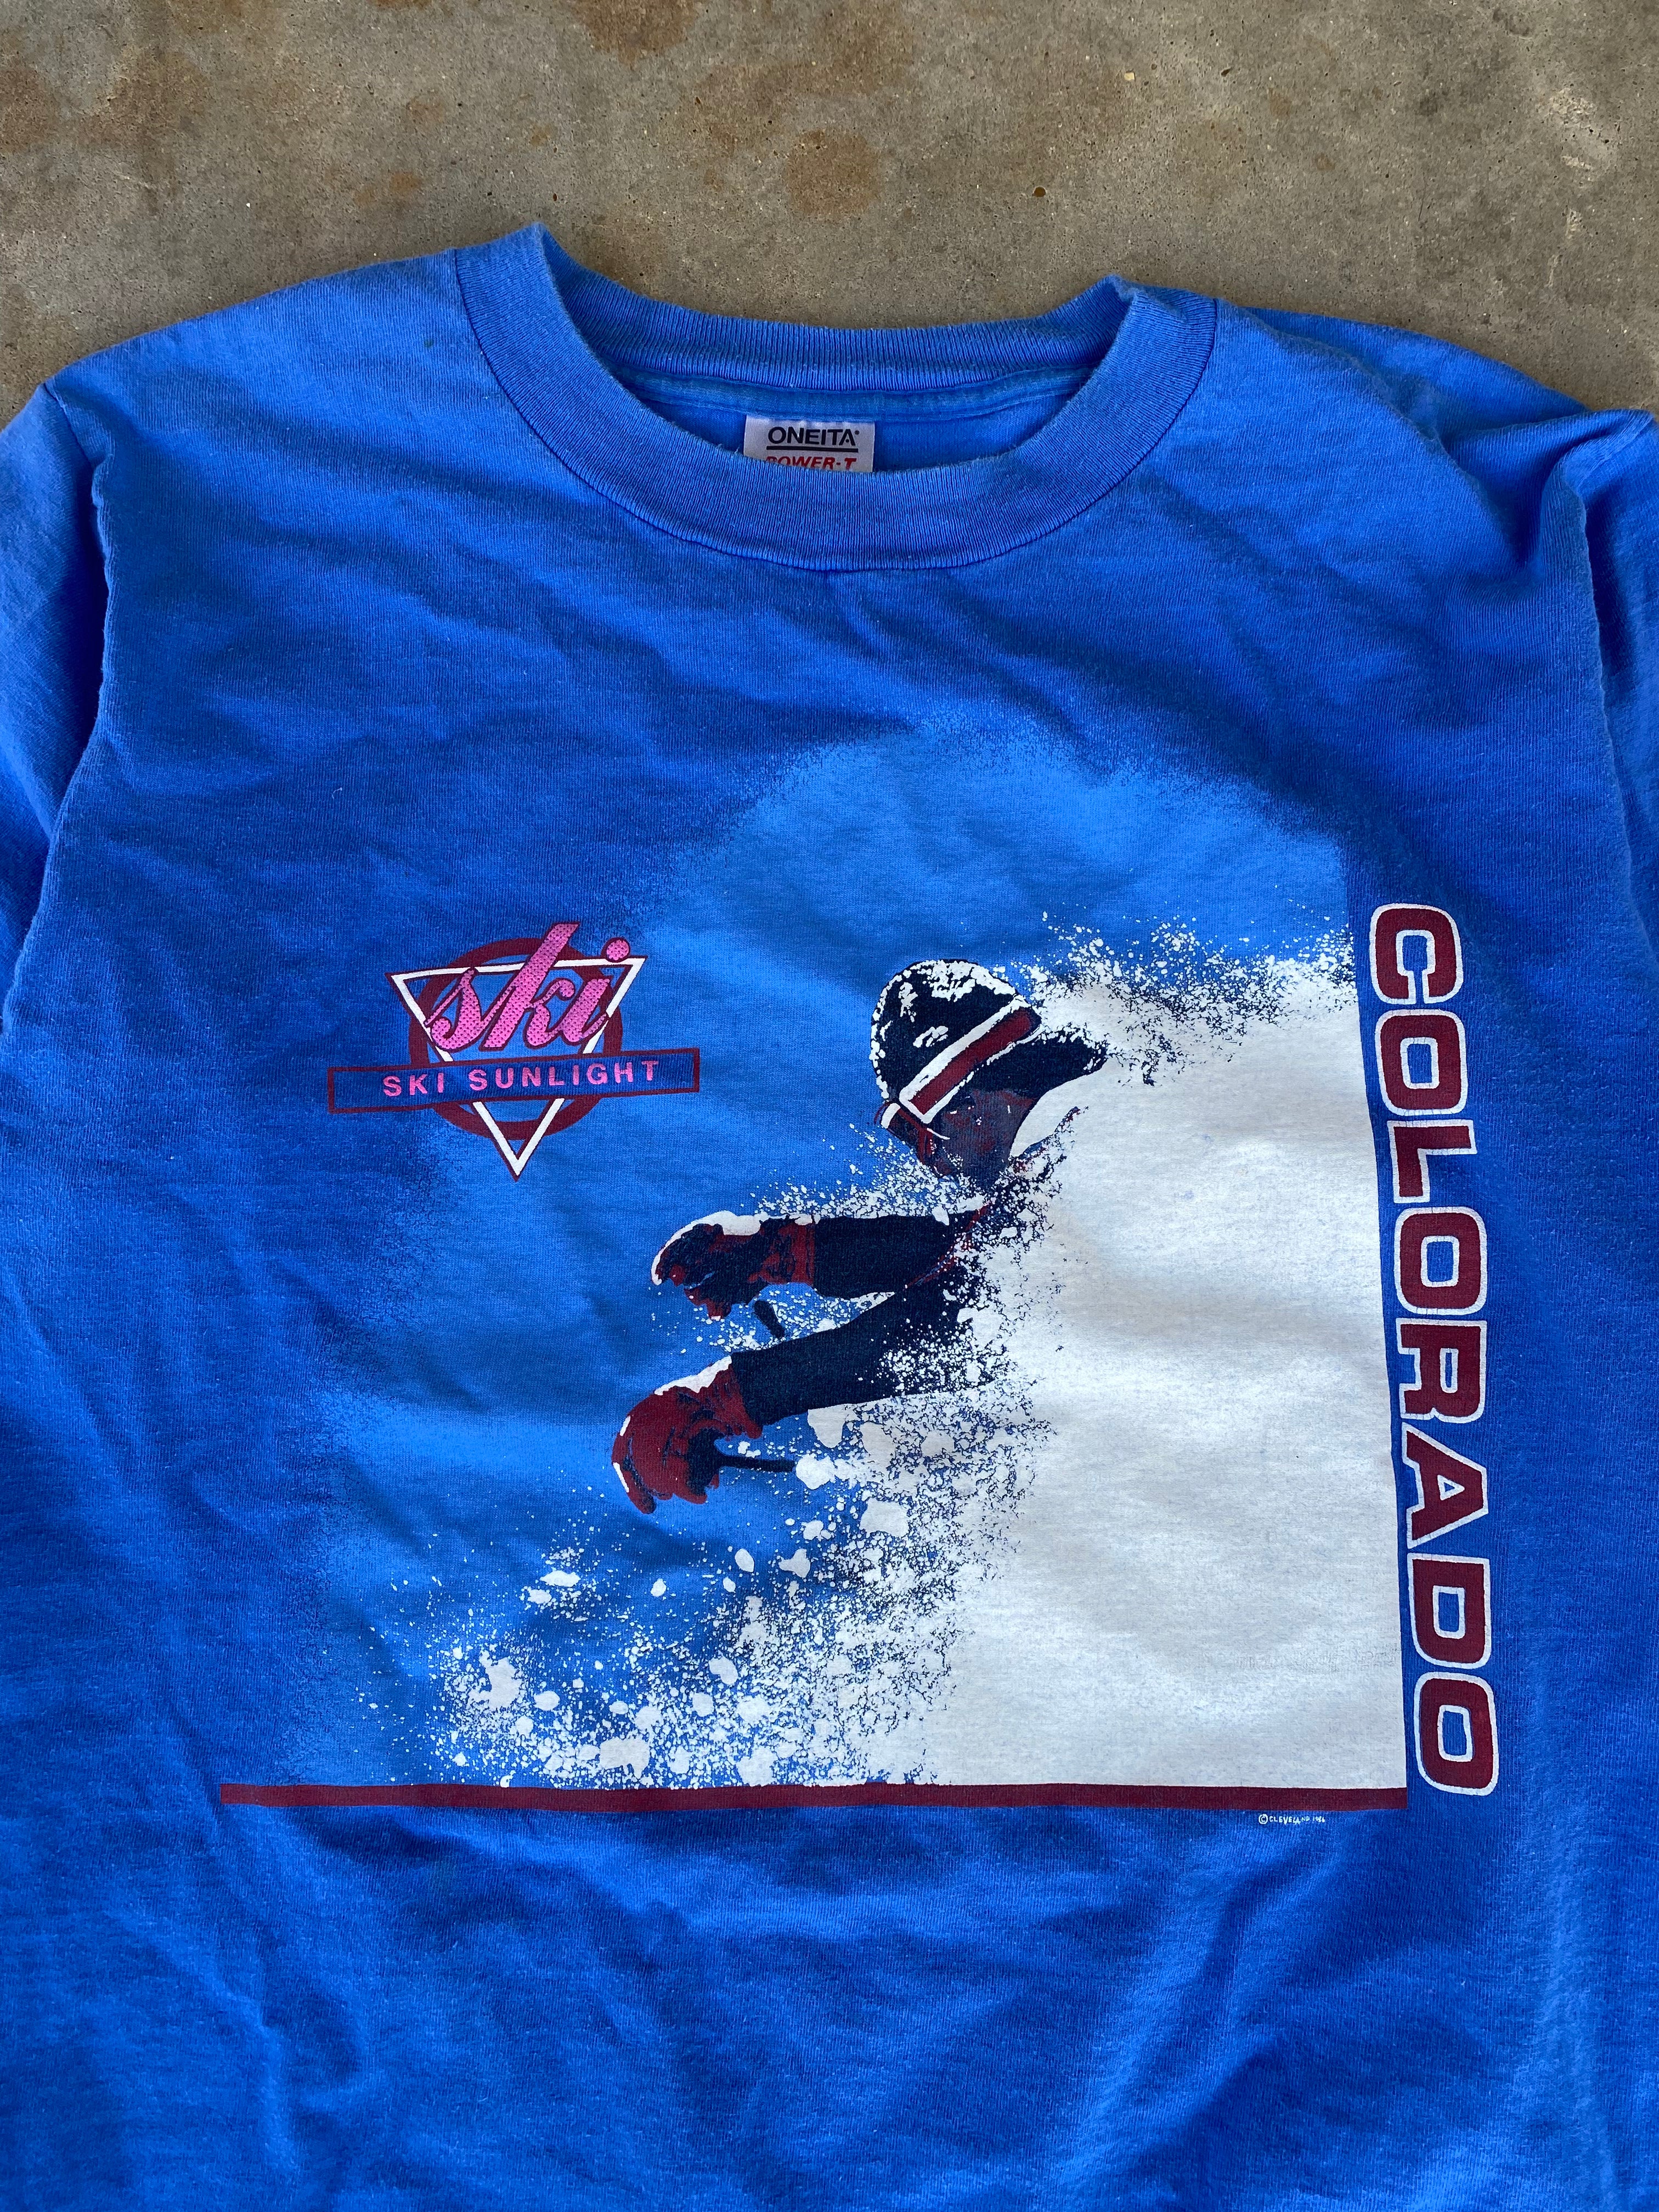 1990s Colorado “Ski Sunlight” Longsleeve T-Shirt (M)